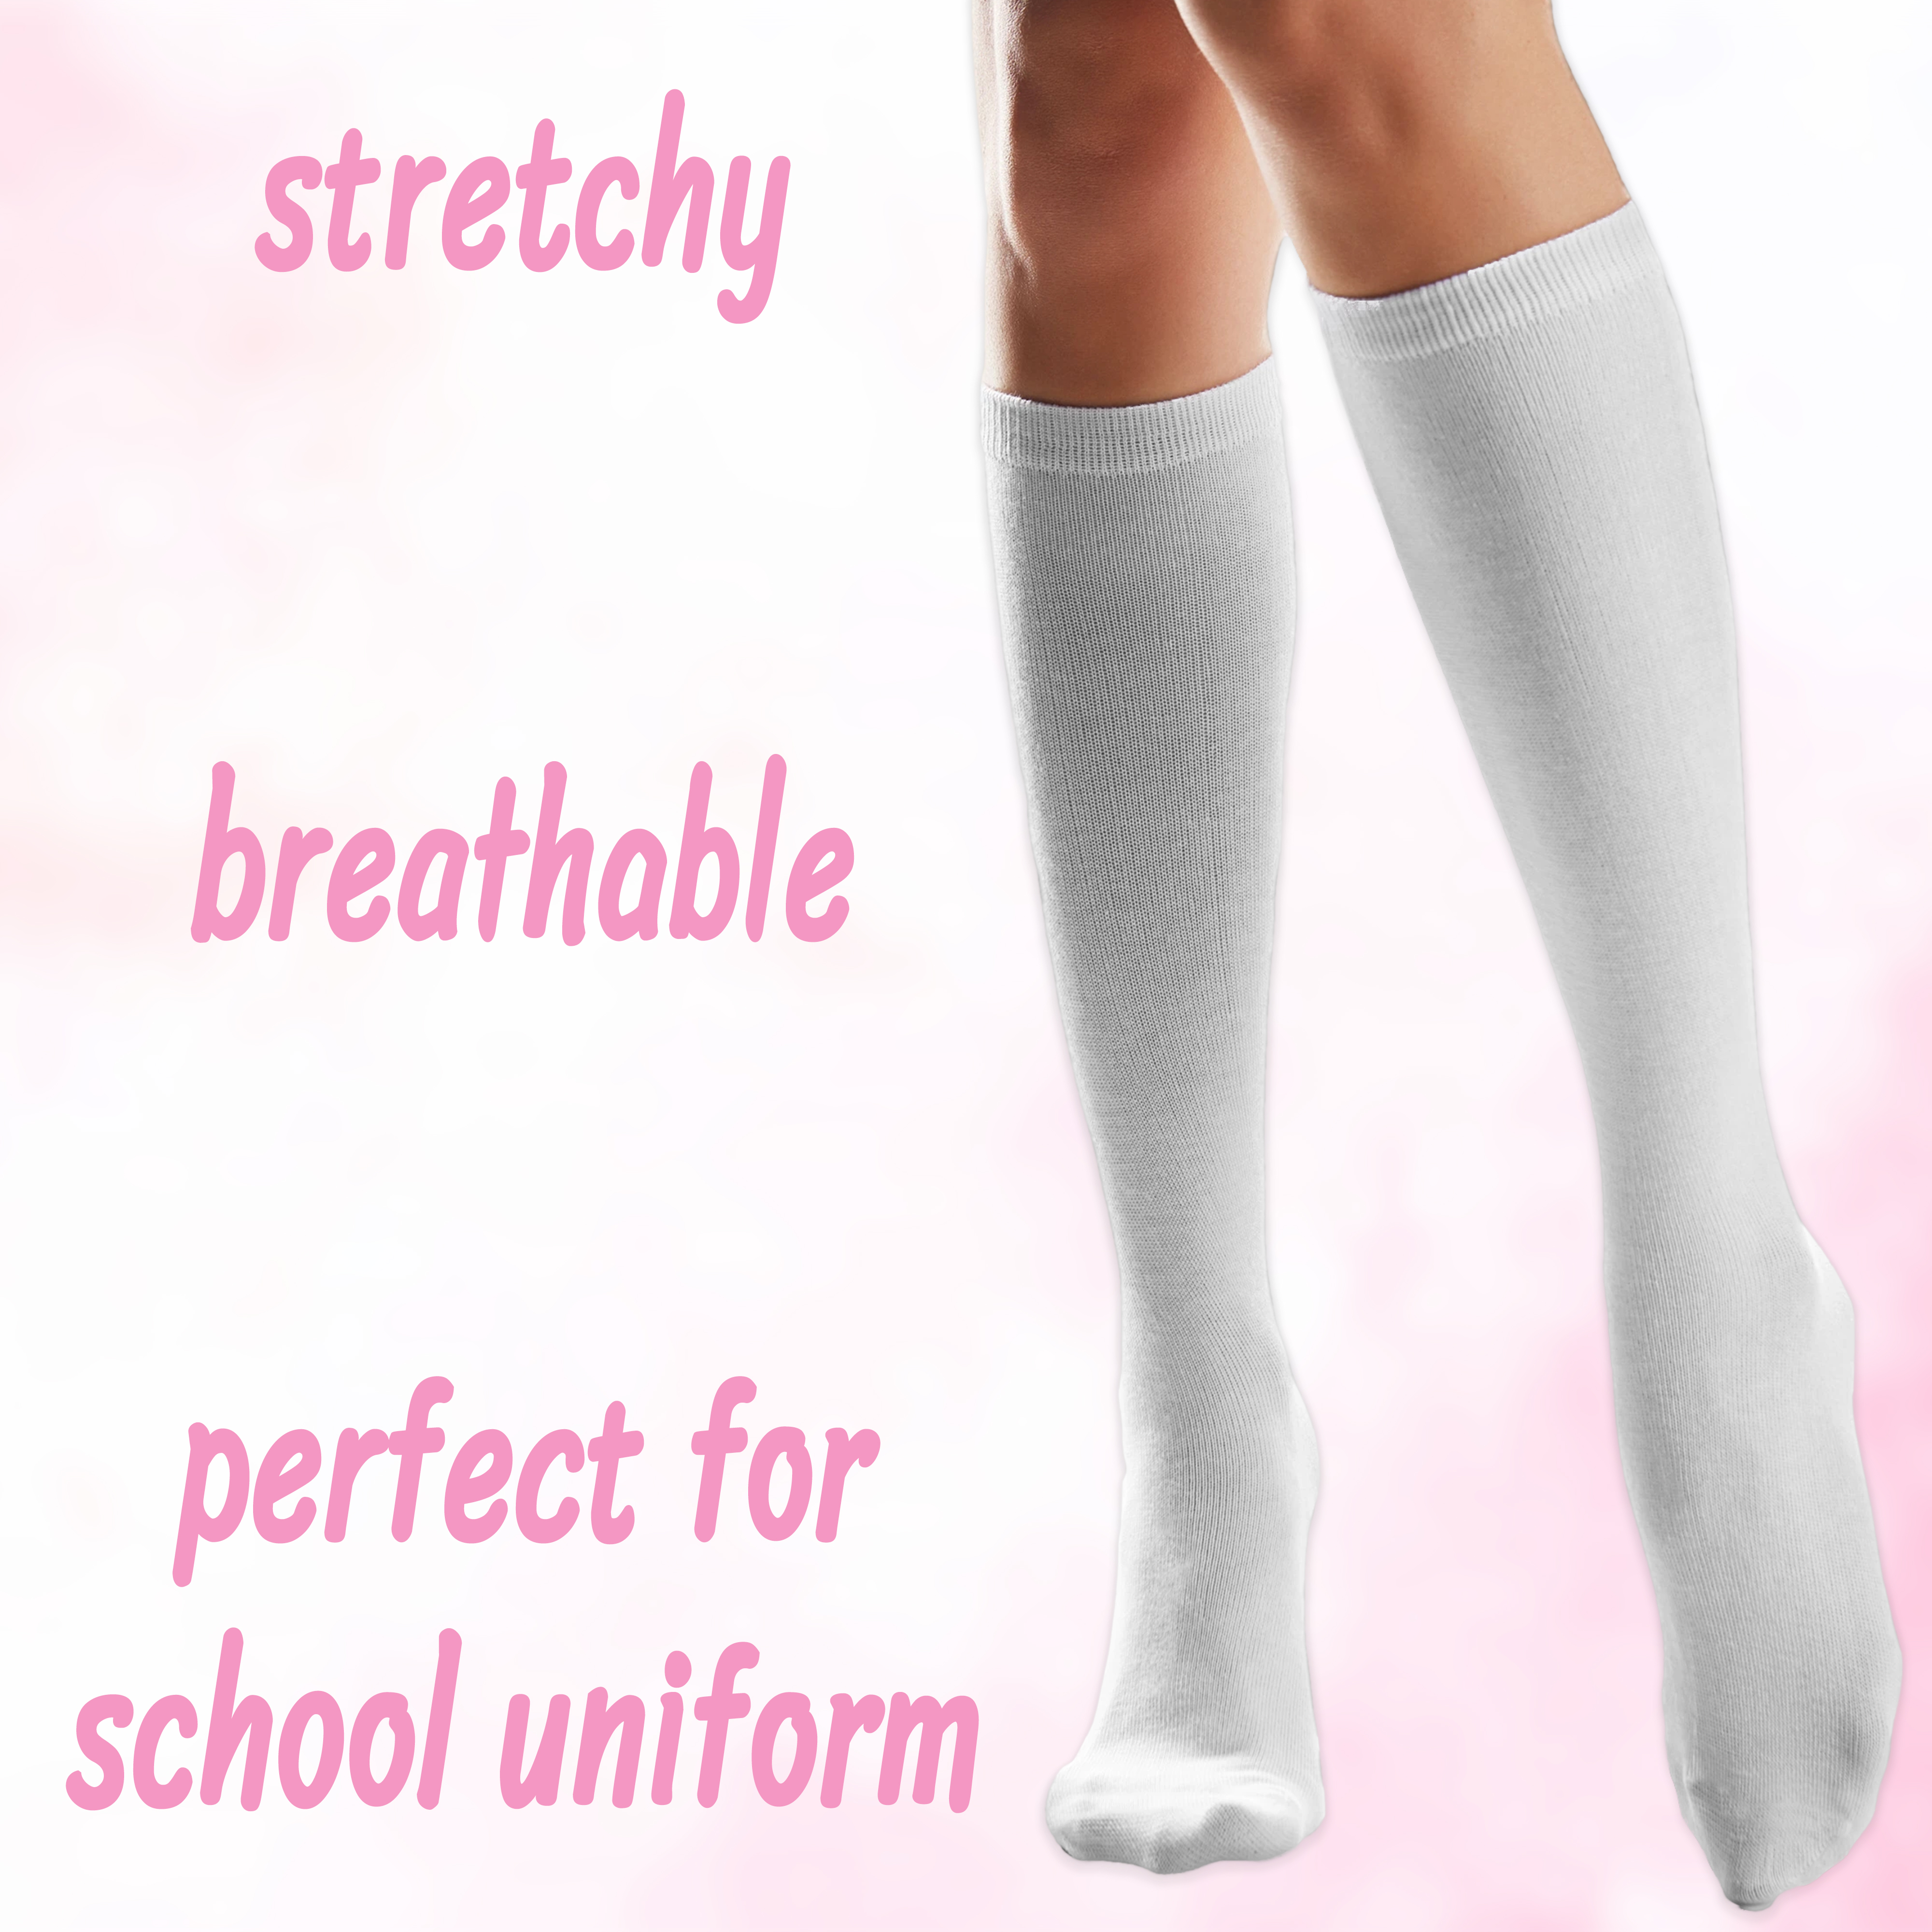 BS3190 Zeco School Uniform Unisex Girls/Boys White Rib Socks White 3 Per Pack 